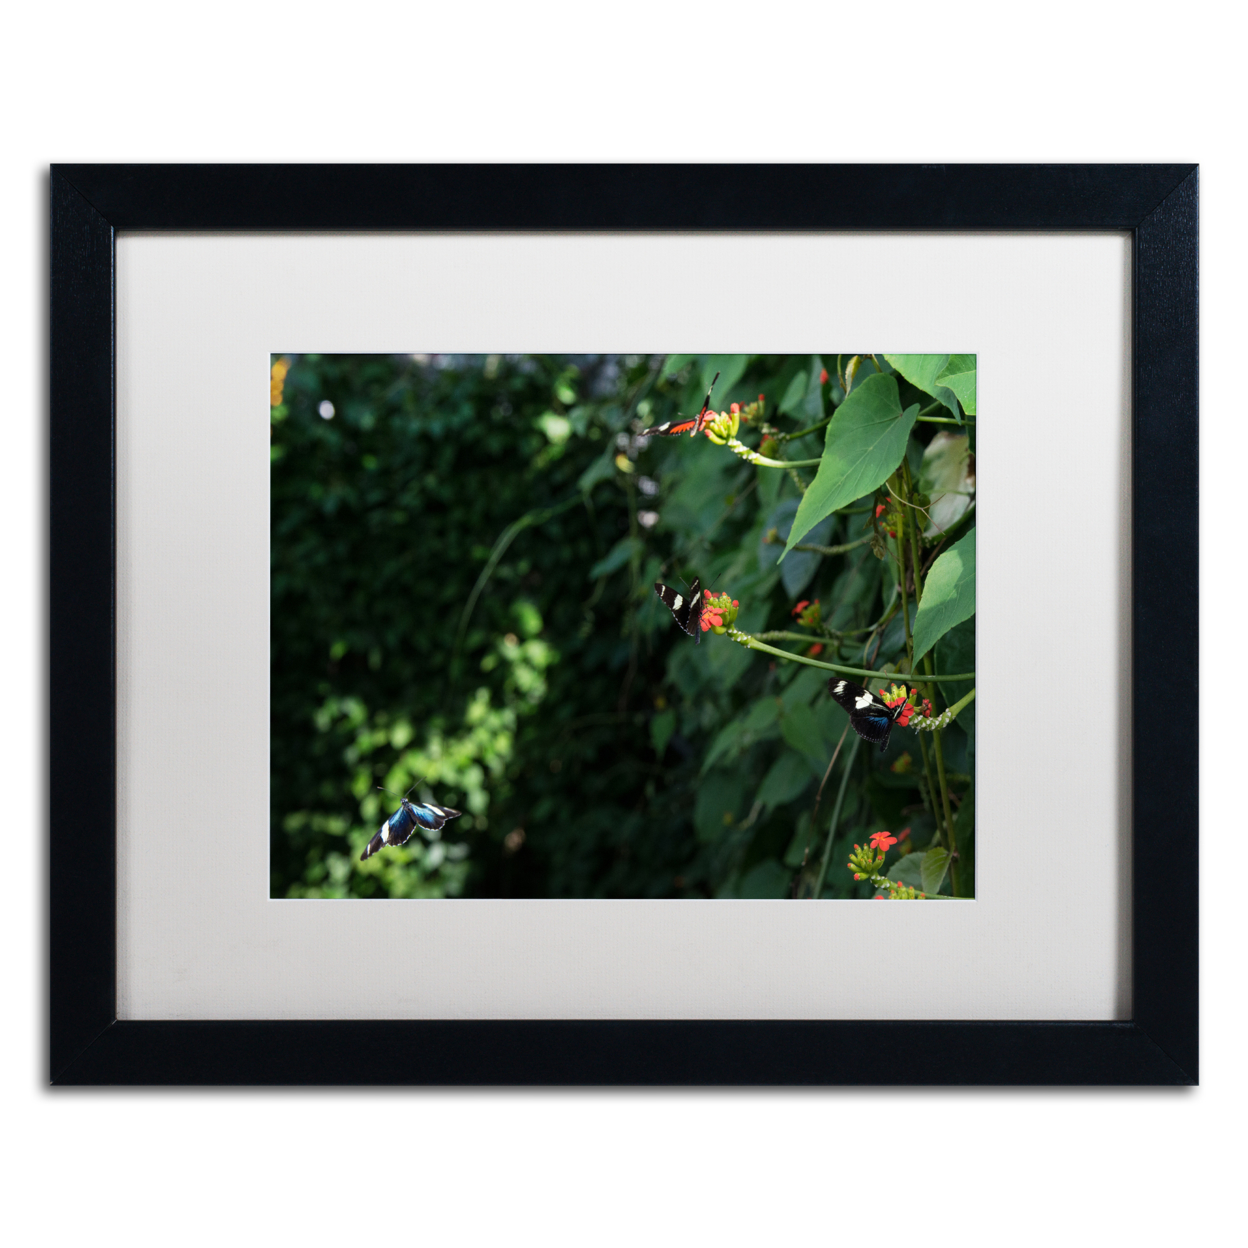 Kurt Shaffer 'Butterflies' Black Wooden Framed Art 18 X 22 Inches